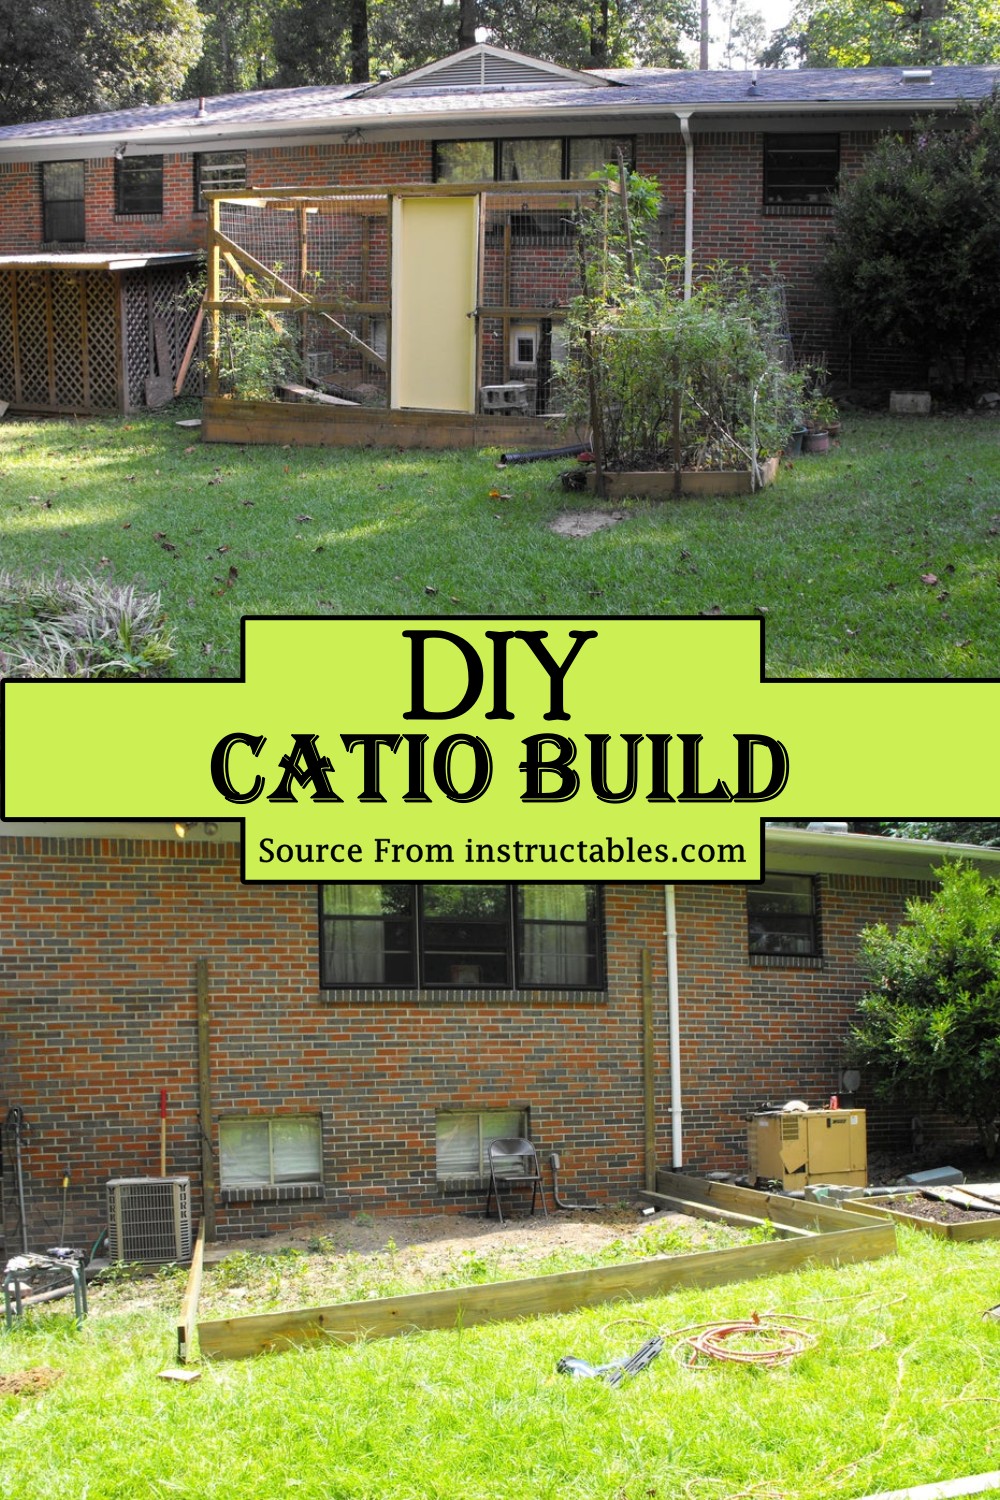 DIY Catio Build